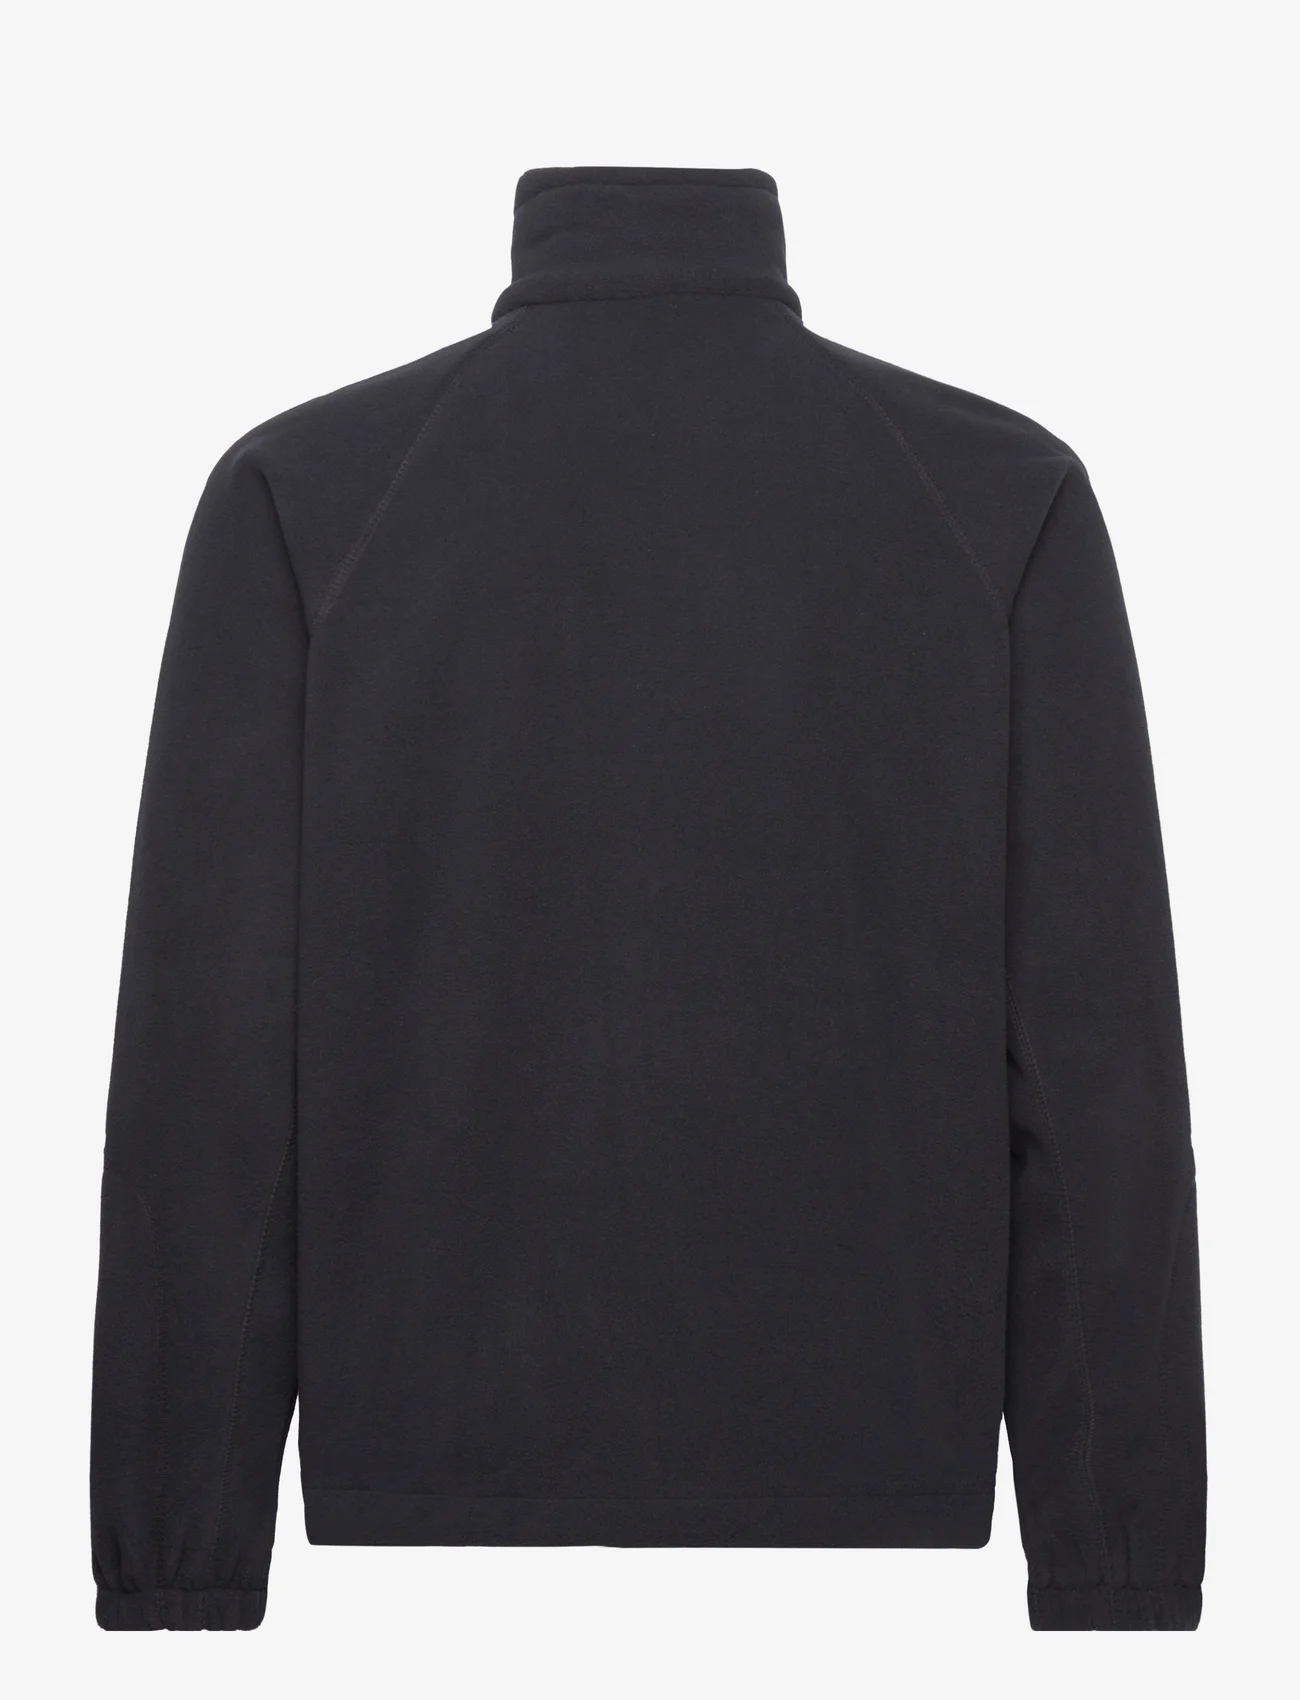 Columbia Sportswear - Fast Trek II Full Zip Fleece - teddy sweaters - black - 1